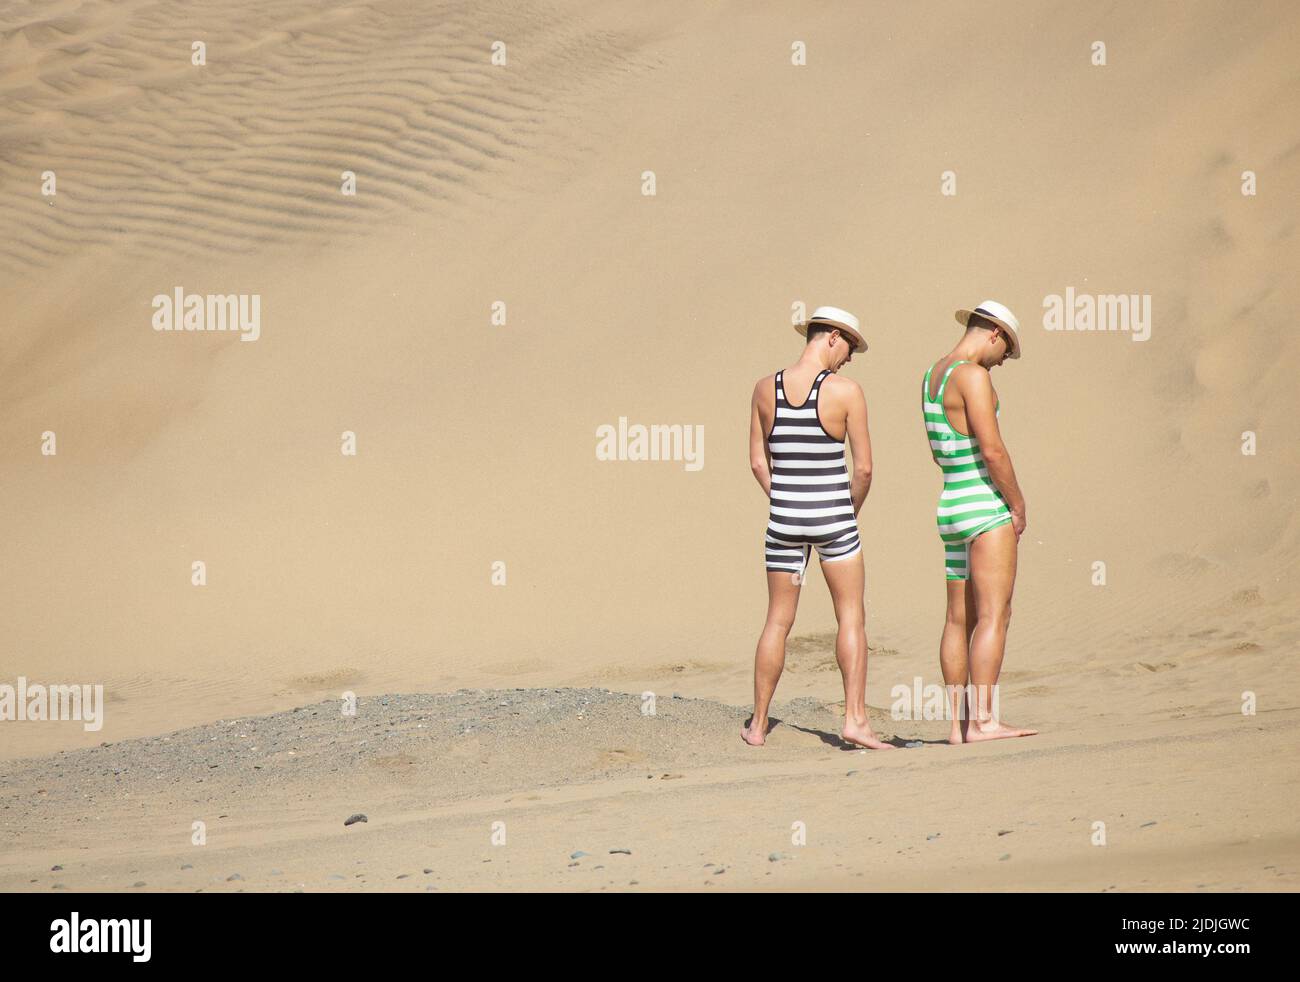 Hombres de lujo vestido orinar, hacer pis, pissing en la playa en España Foto de stock